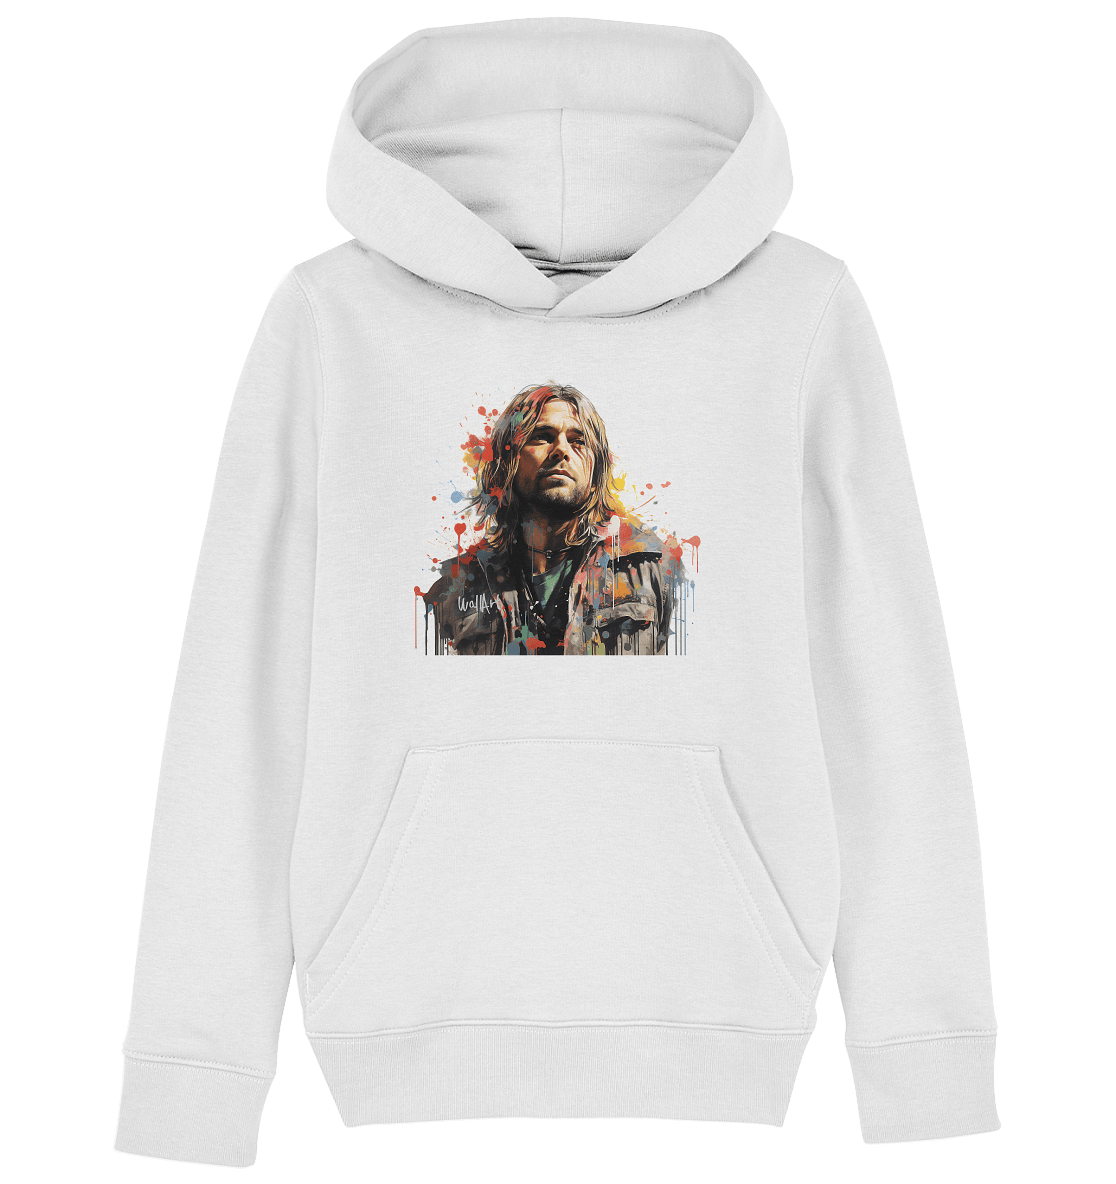 WallArt - Kurt Cobain - Kids Organic Hoodie - Snapshirts